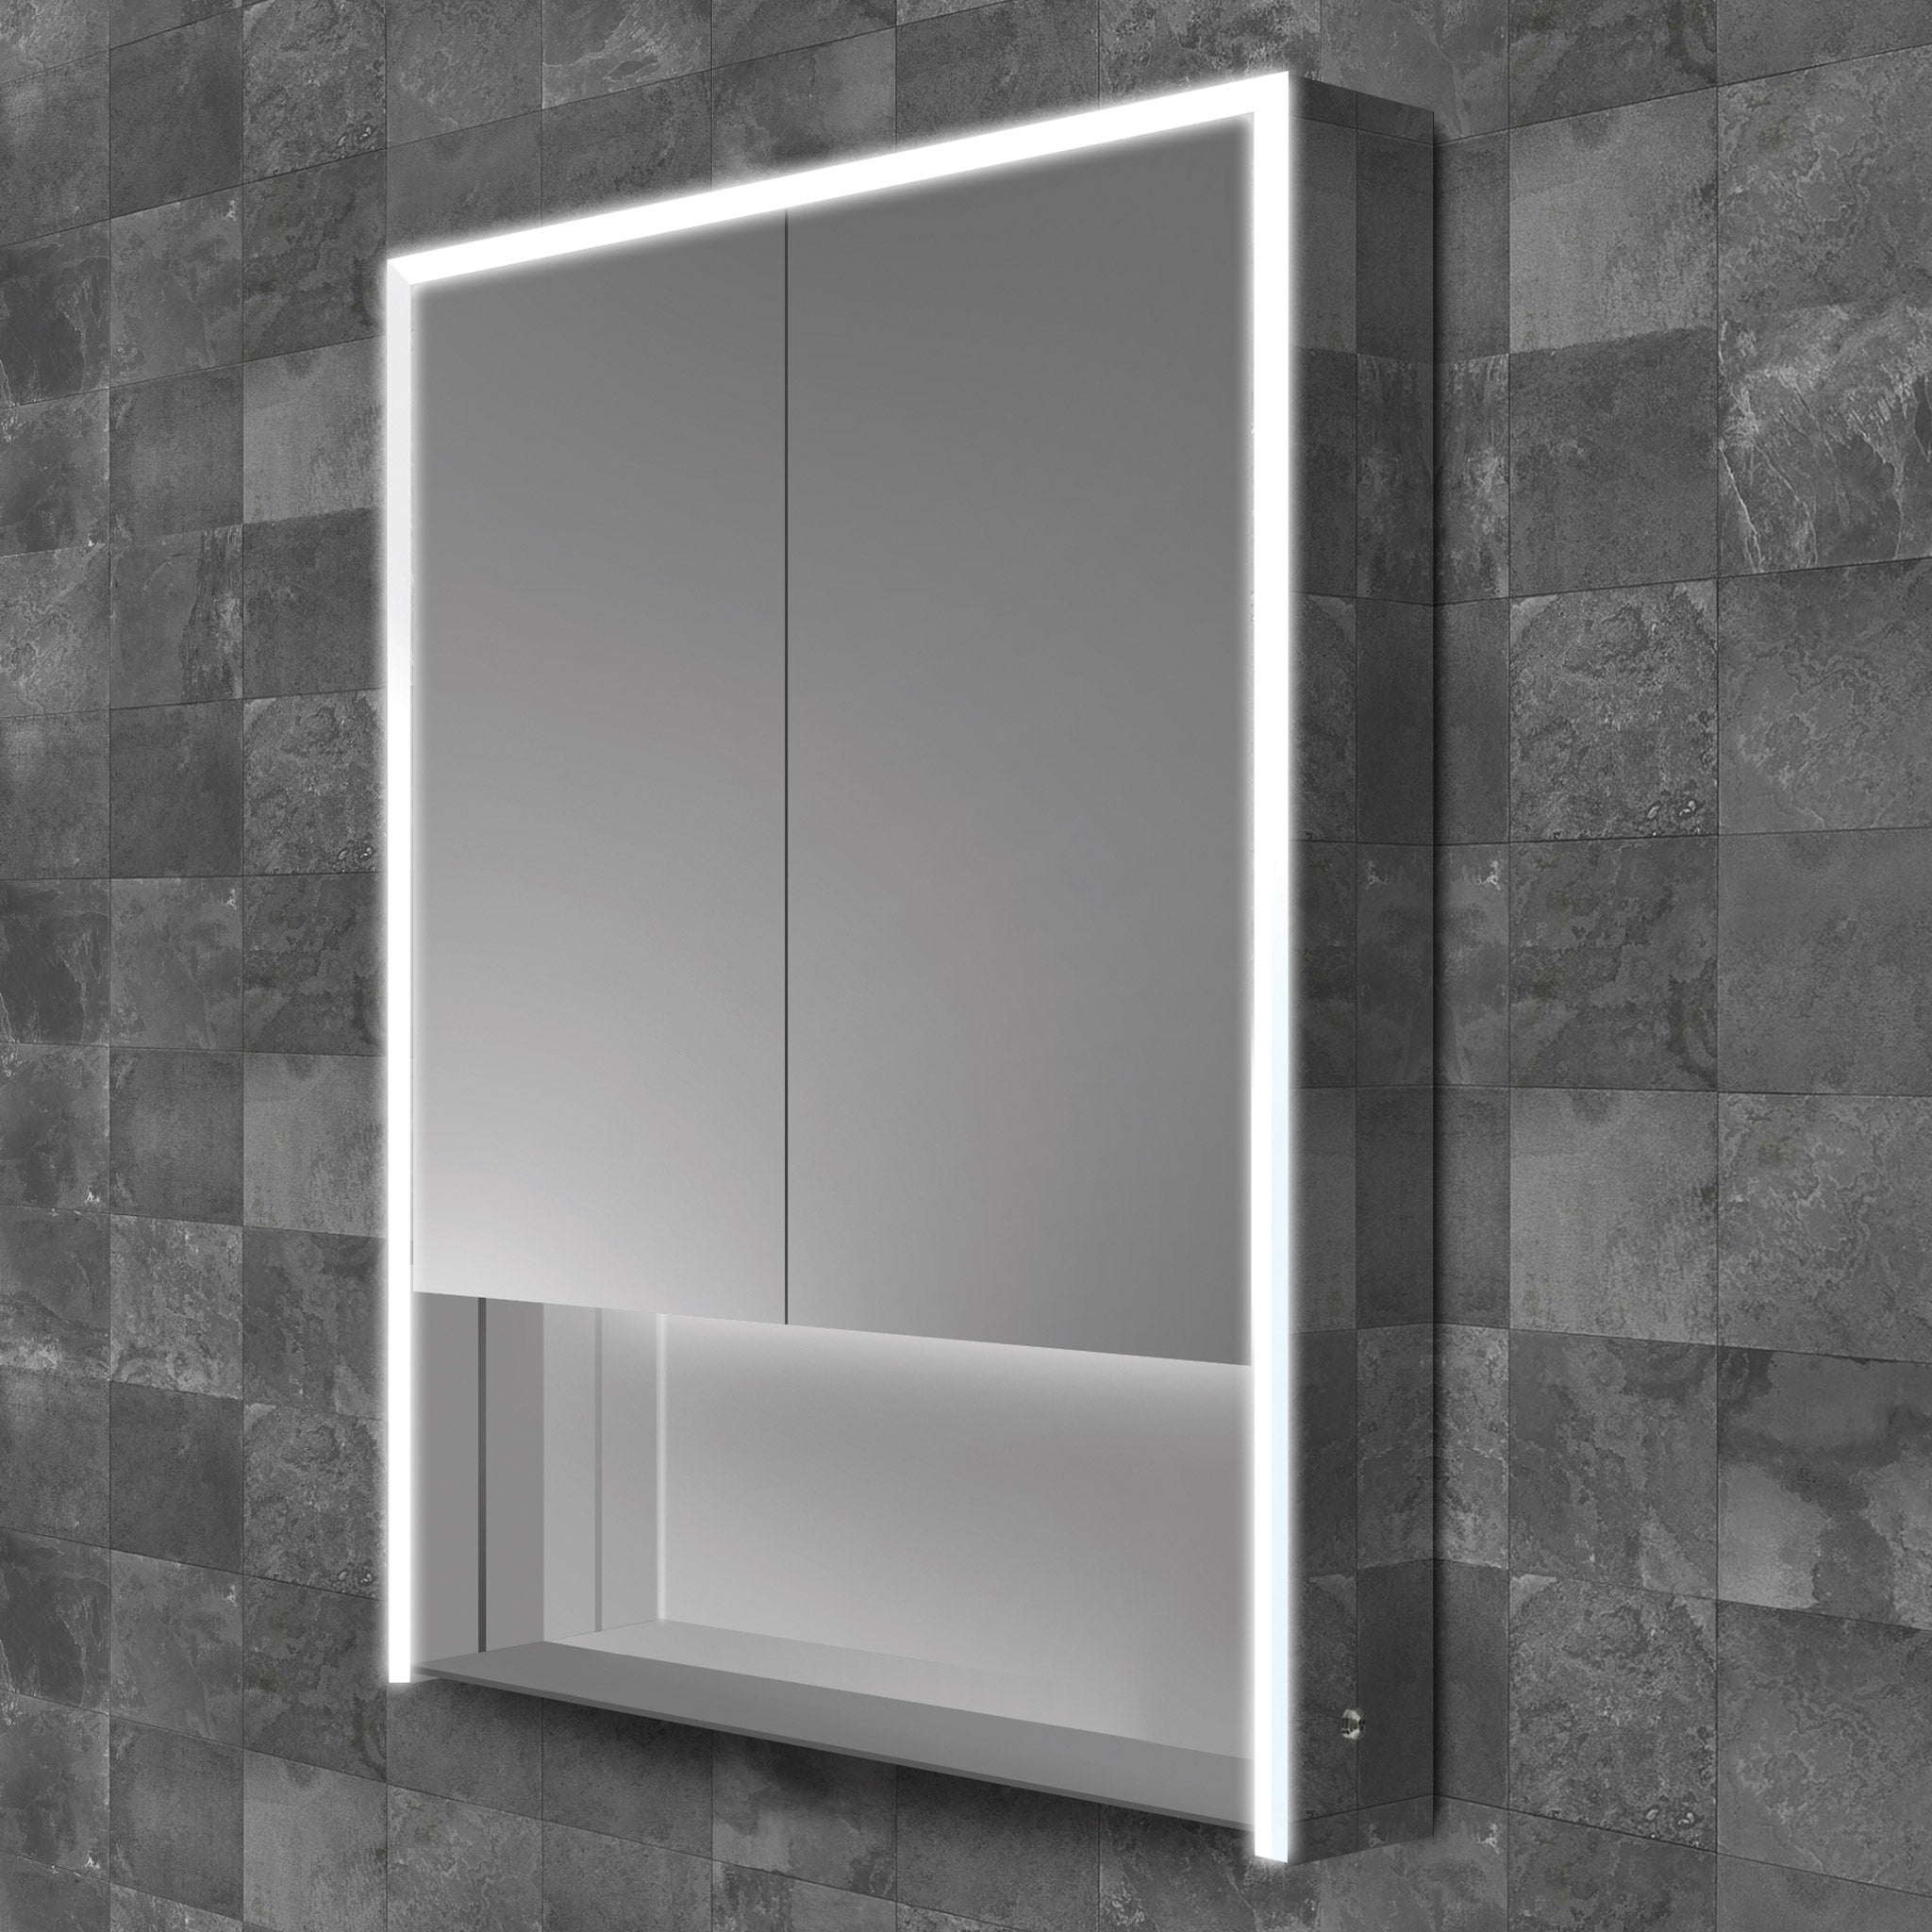 HiB Verve 60 LED Aluminium Mirror Cabinet 60 x 90cm